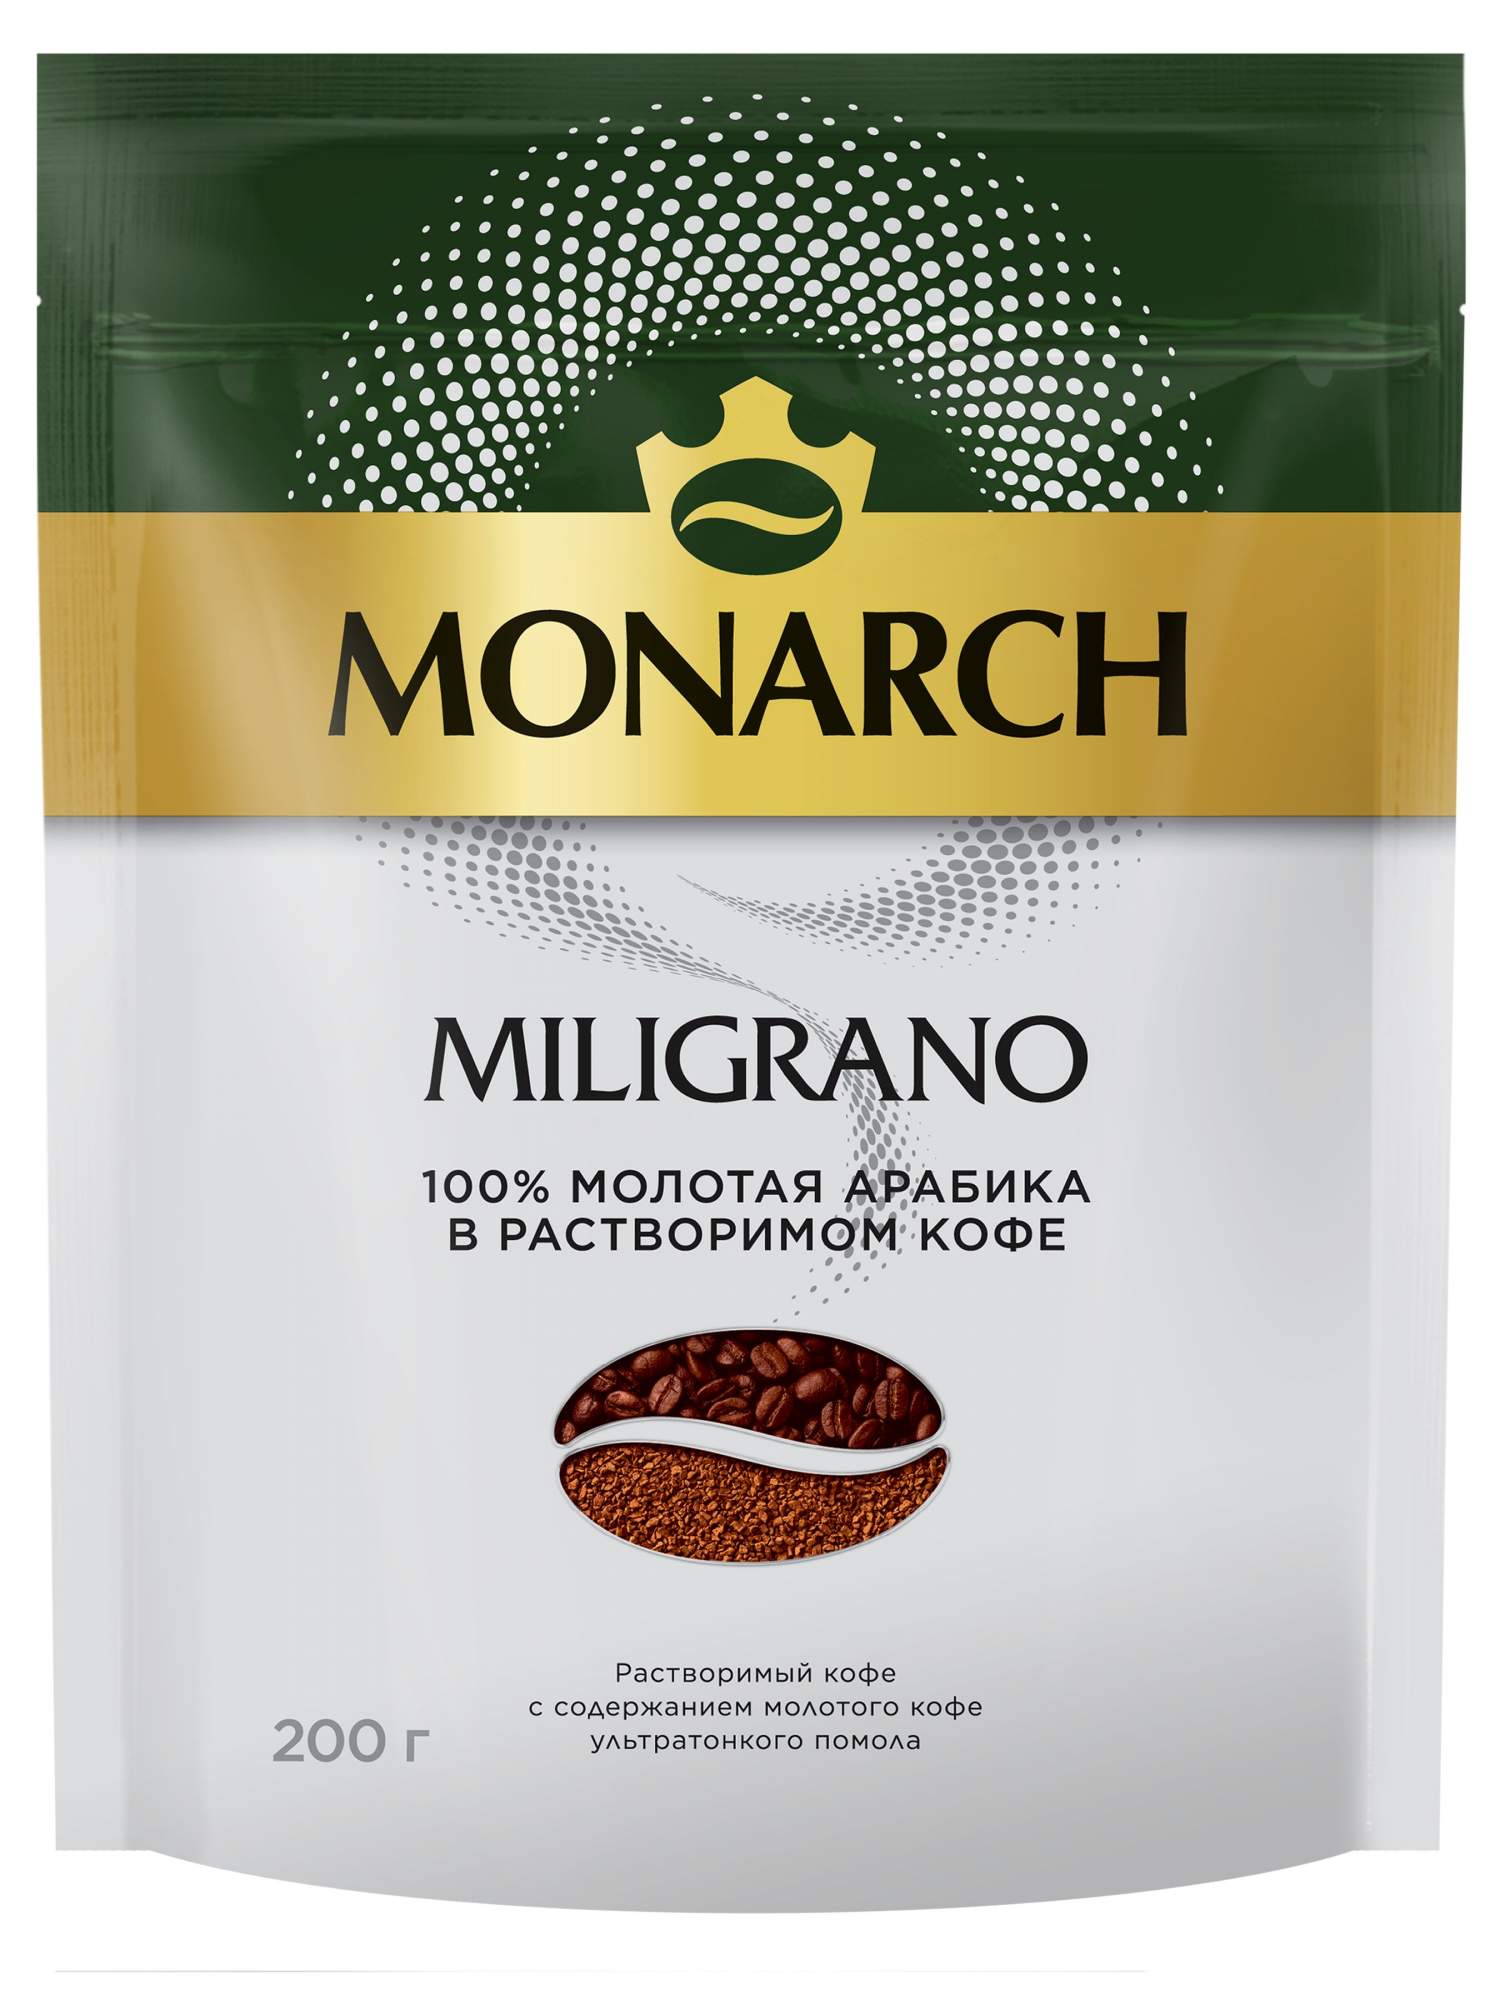 Кофе растворимый Monarch Miligrano сублимированный, c добавлением молотого, 200 г - купить в SovaSova, цена на Мегамаркет